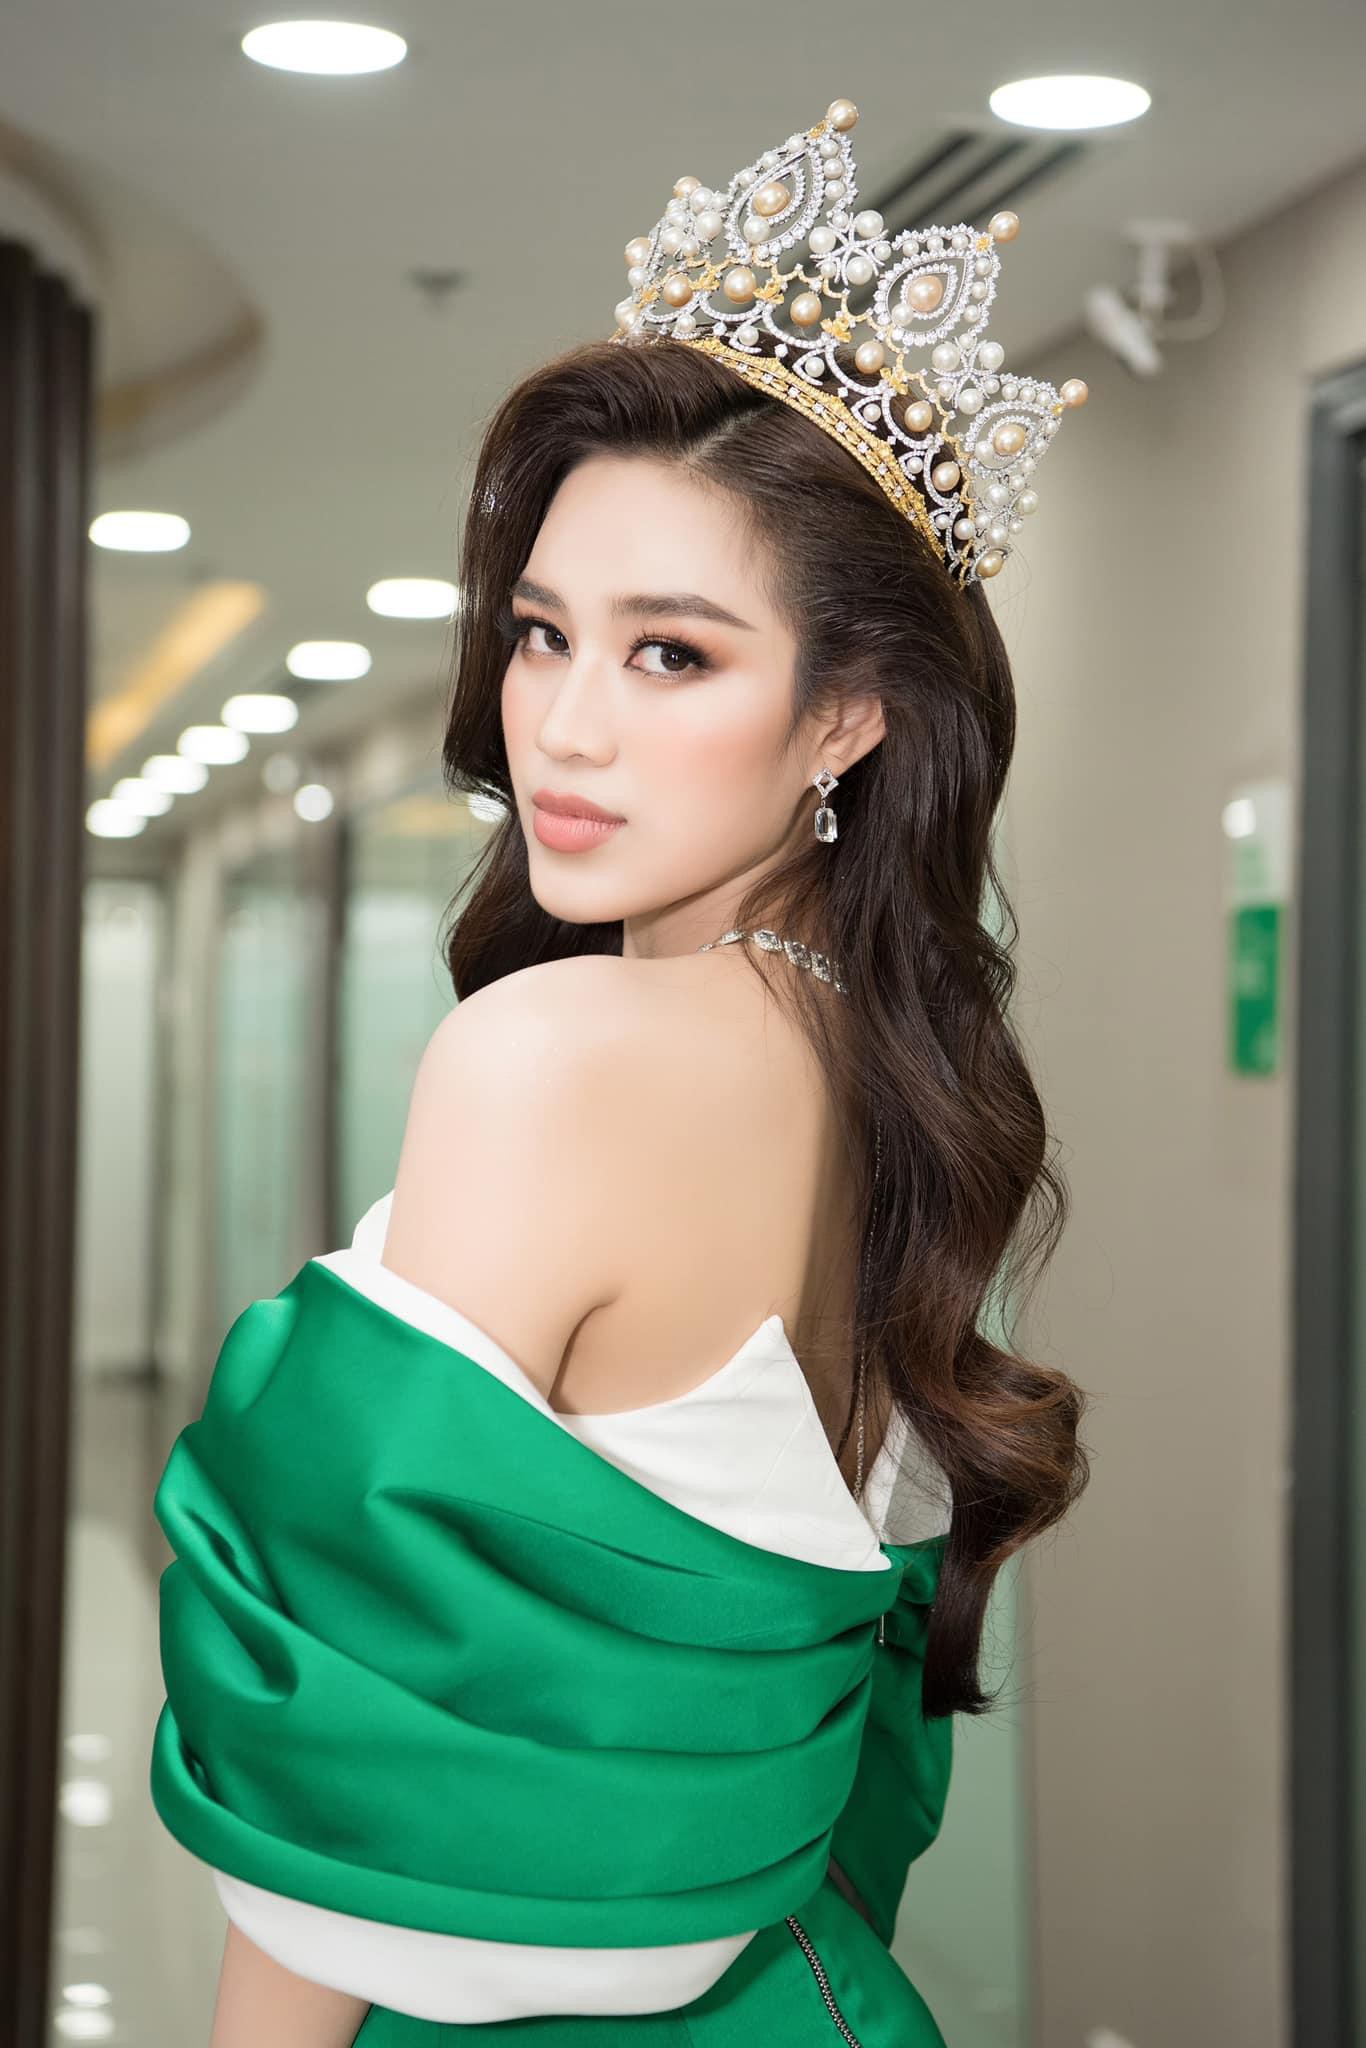 Hoa hậu Đỗ Thị Hà ‘biến hóa’ với tóc: Xoăn đuôi nhẹ vẫn là ‘chân ái’ - Ảnh 20.